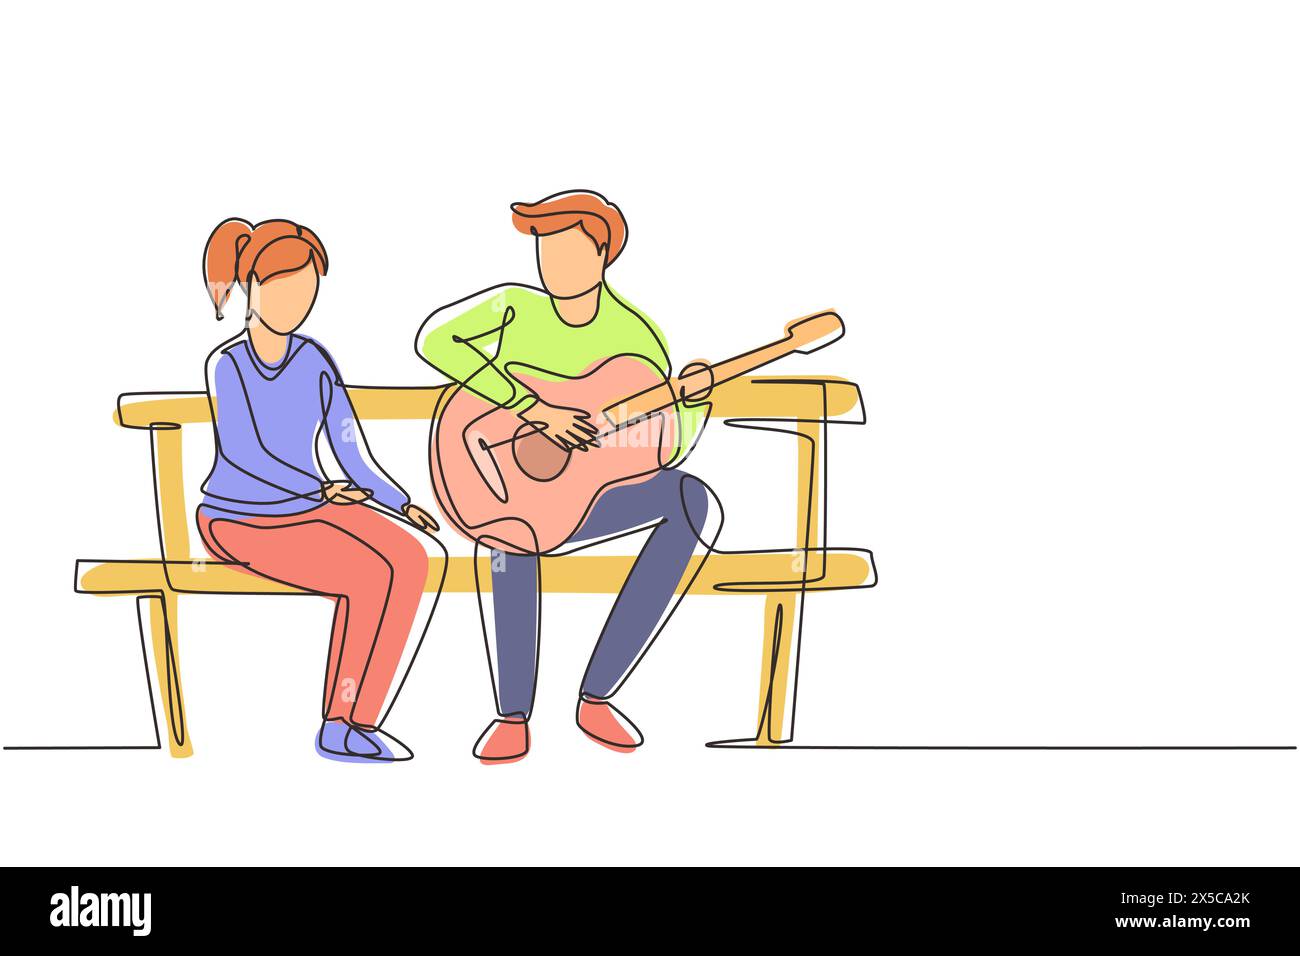 Einzelne, durchgehende Linien zeichnen Menschen, die auf einer Holzbank im Park sitzen. Ein Paar mit einem Date, ein Mann spielt Musik auf der Gitarre, ein Mädchen hört zu und singt zusammen. Stock Vektor